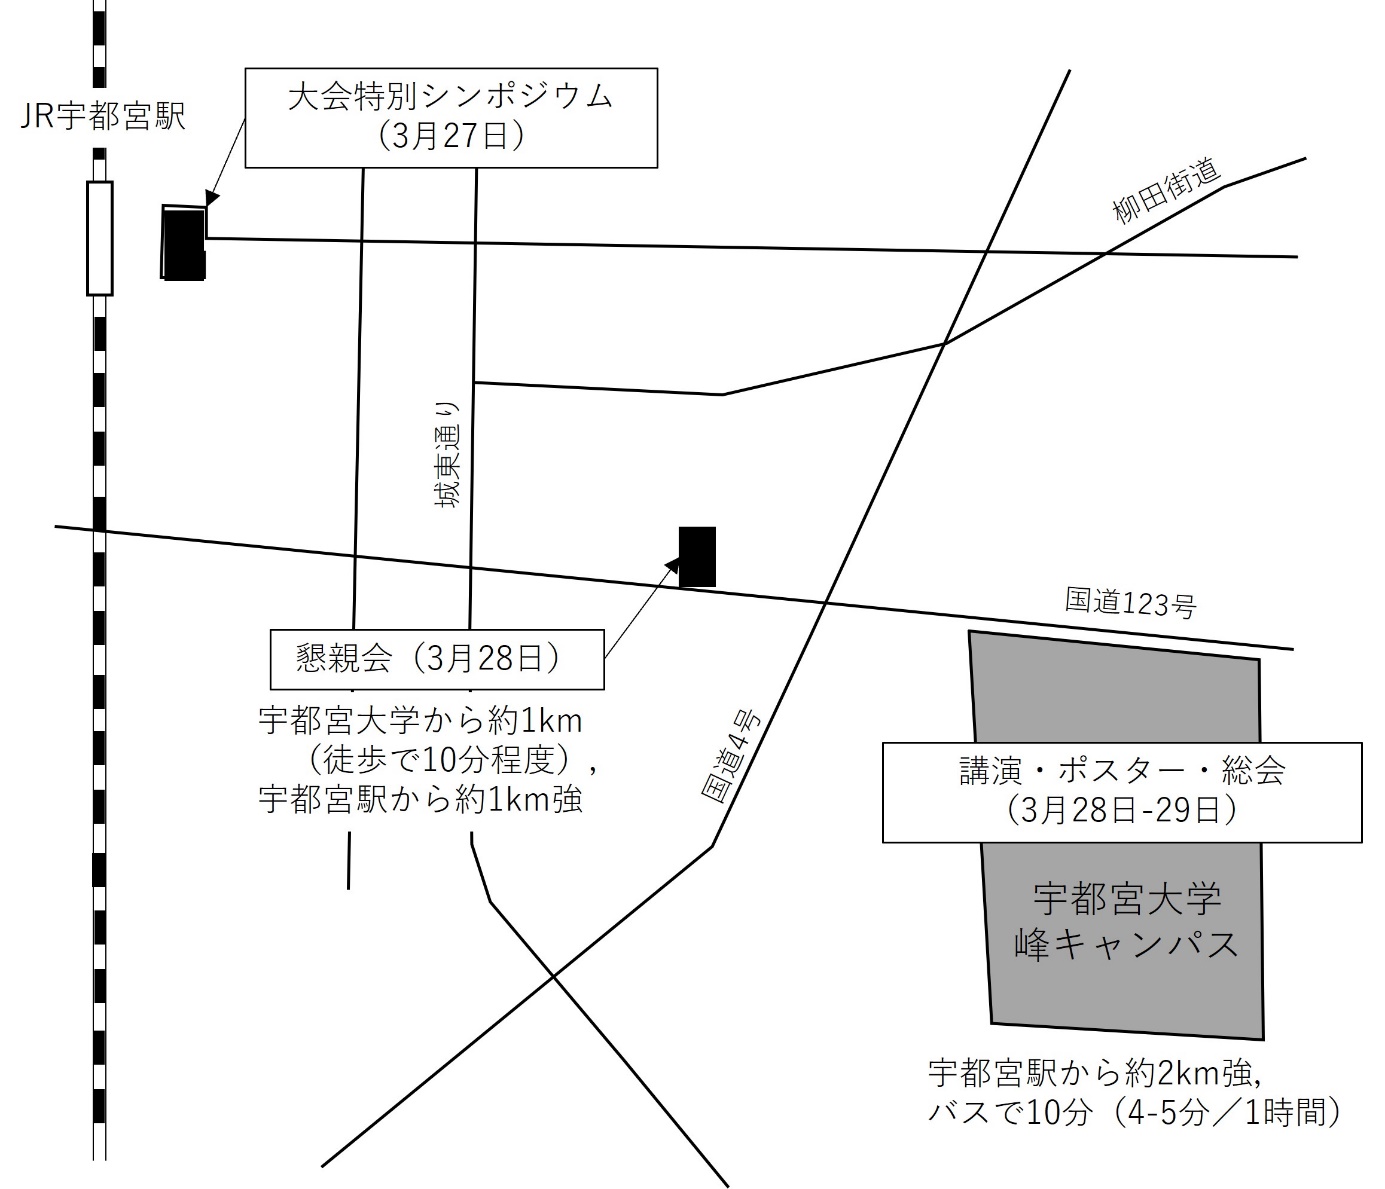 JR宇都宮駅周辺マップ